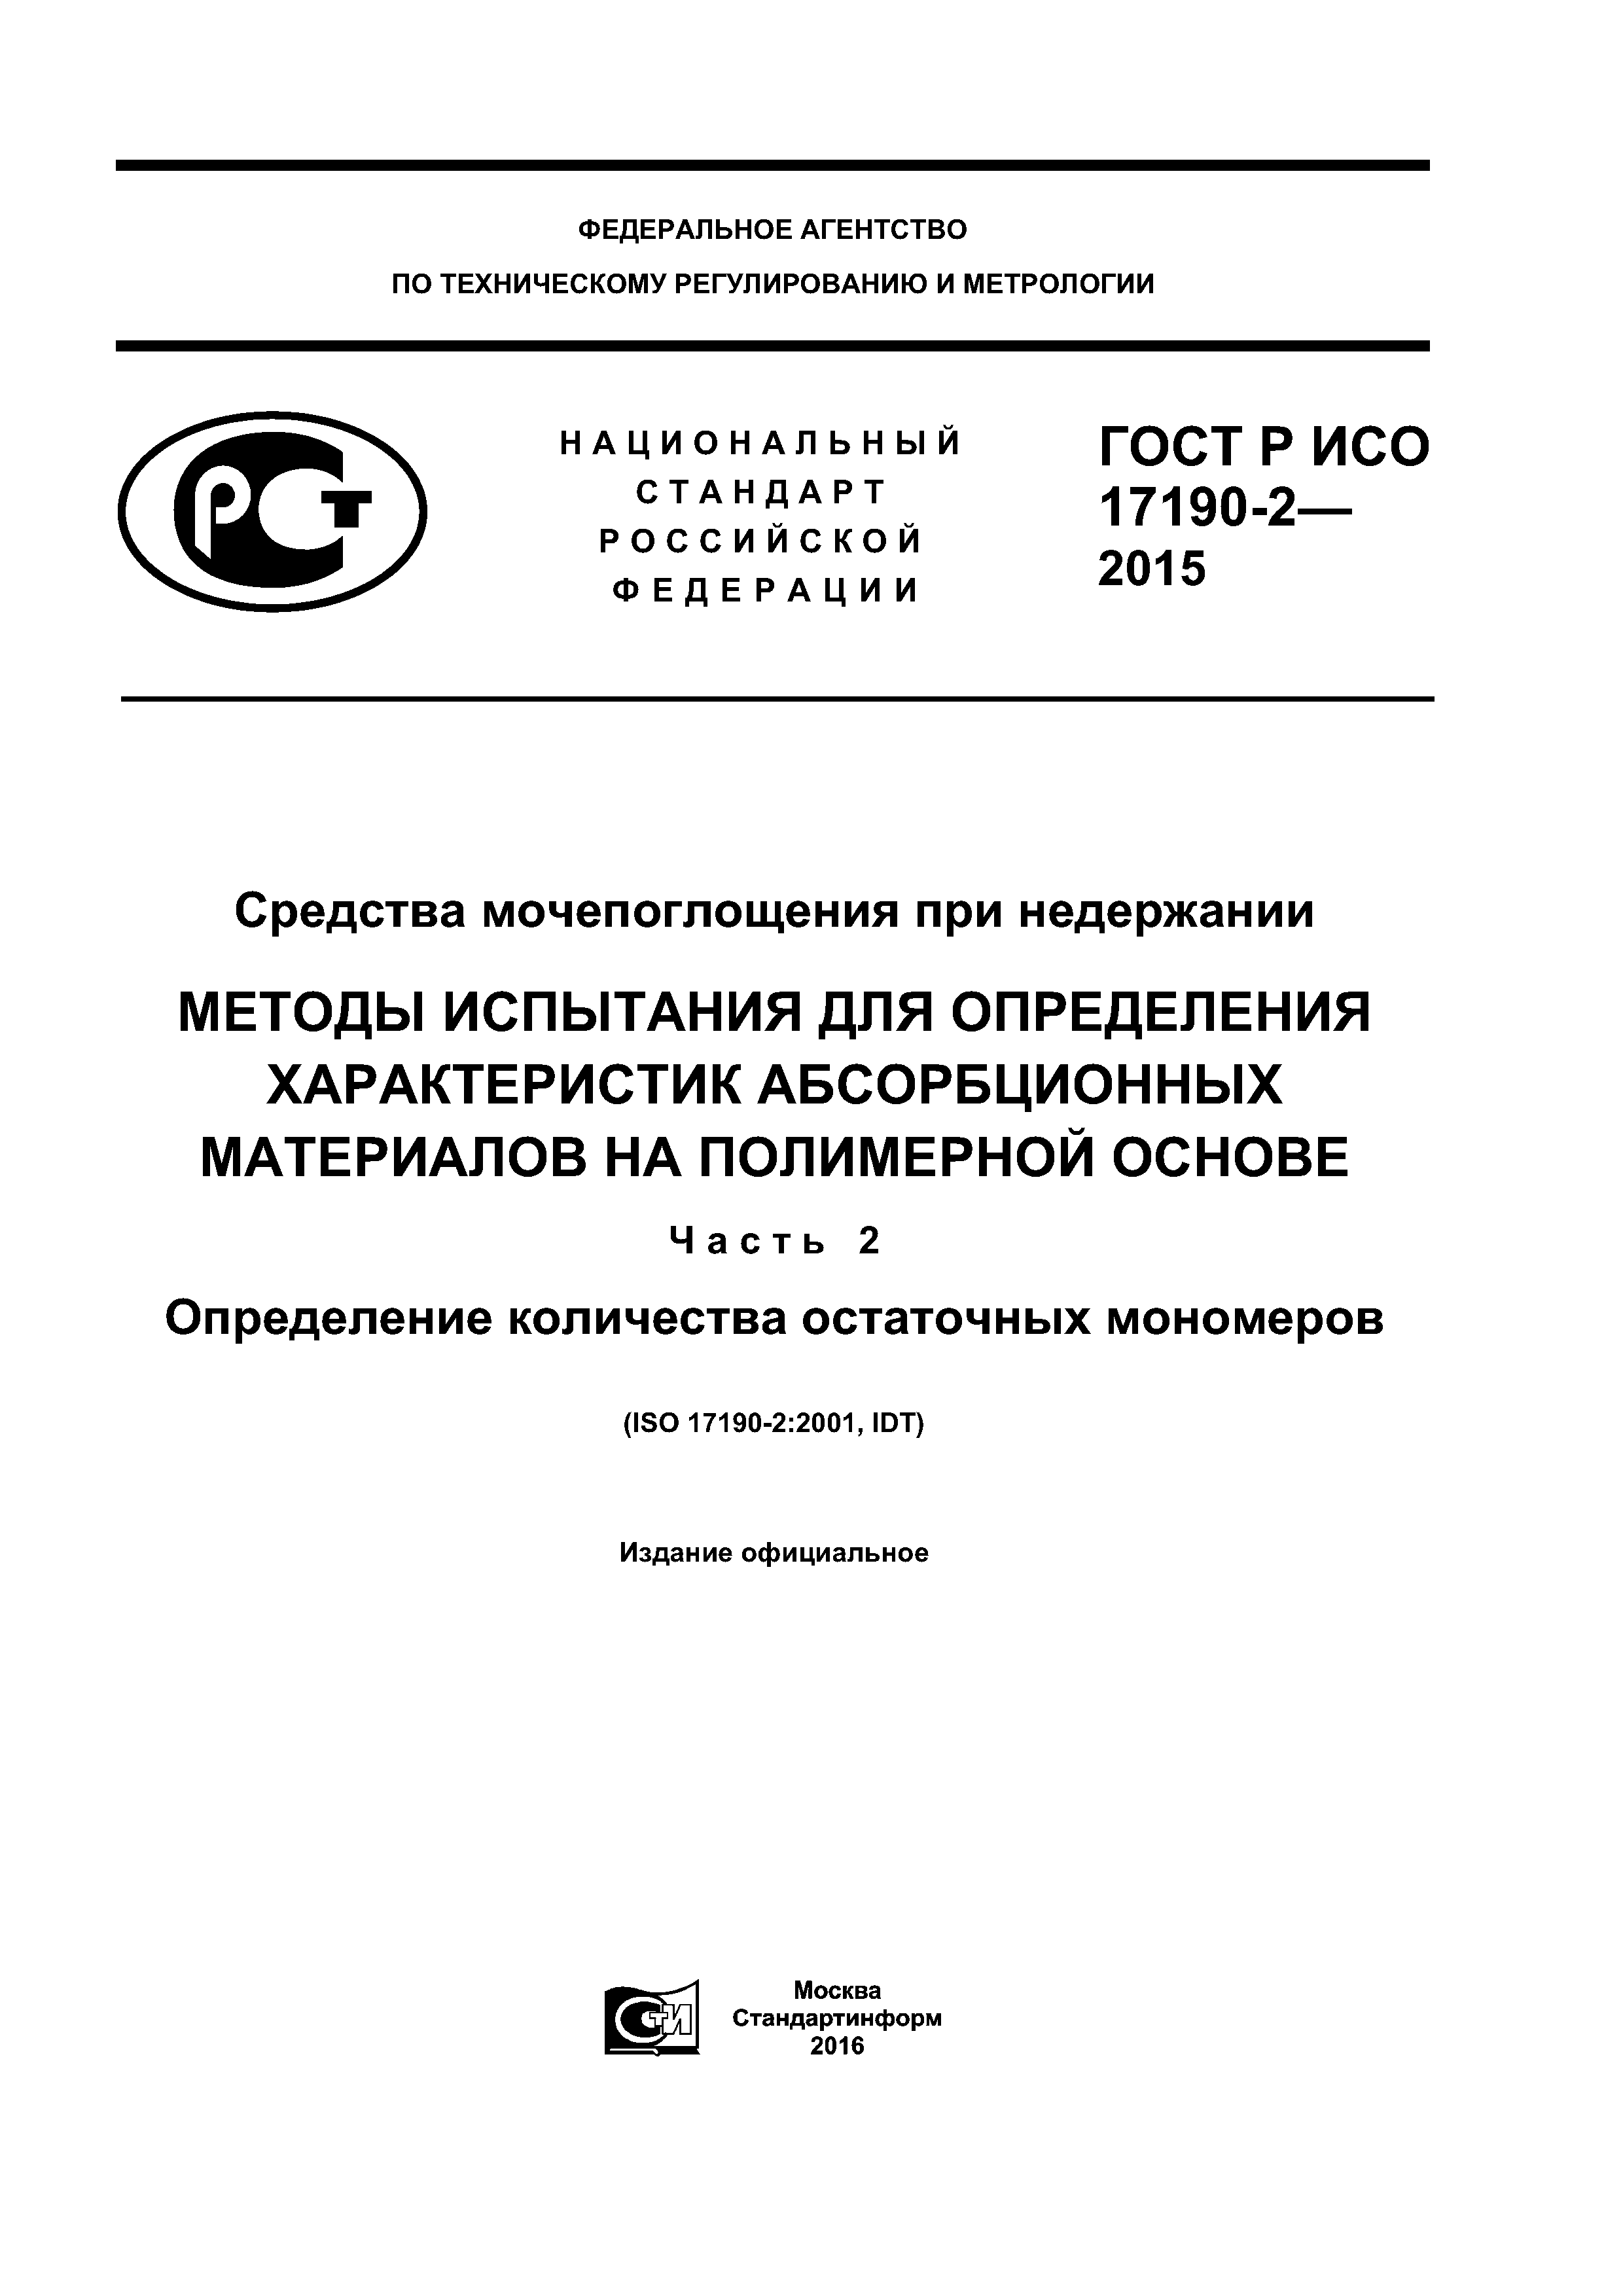 ГОСТ Р ИСО 17190-2-2015